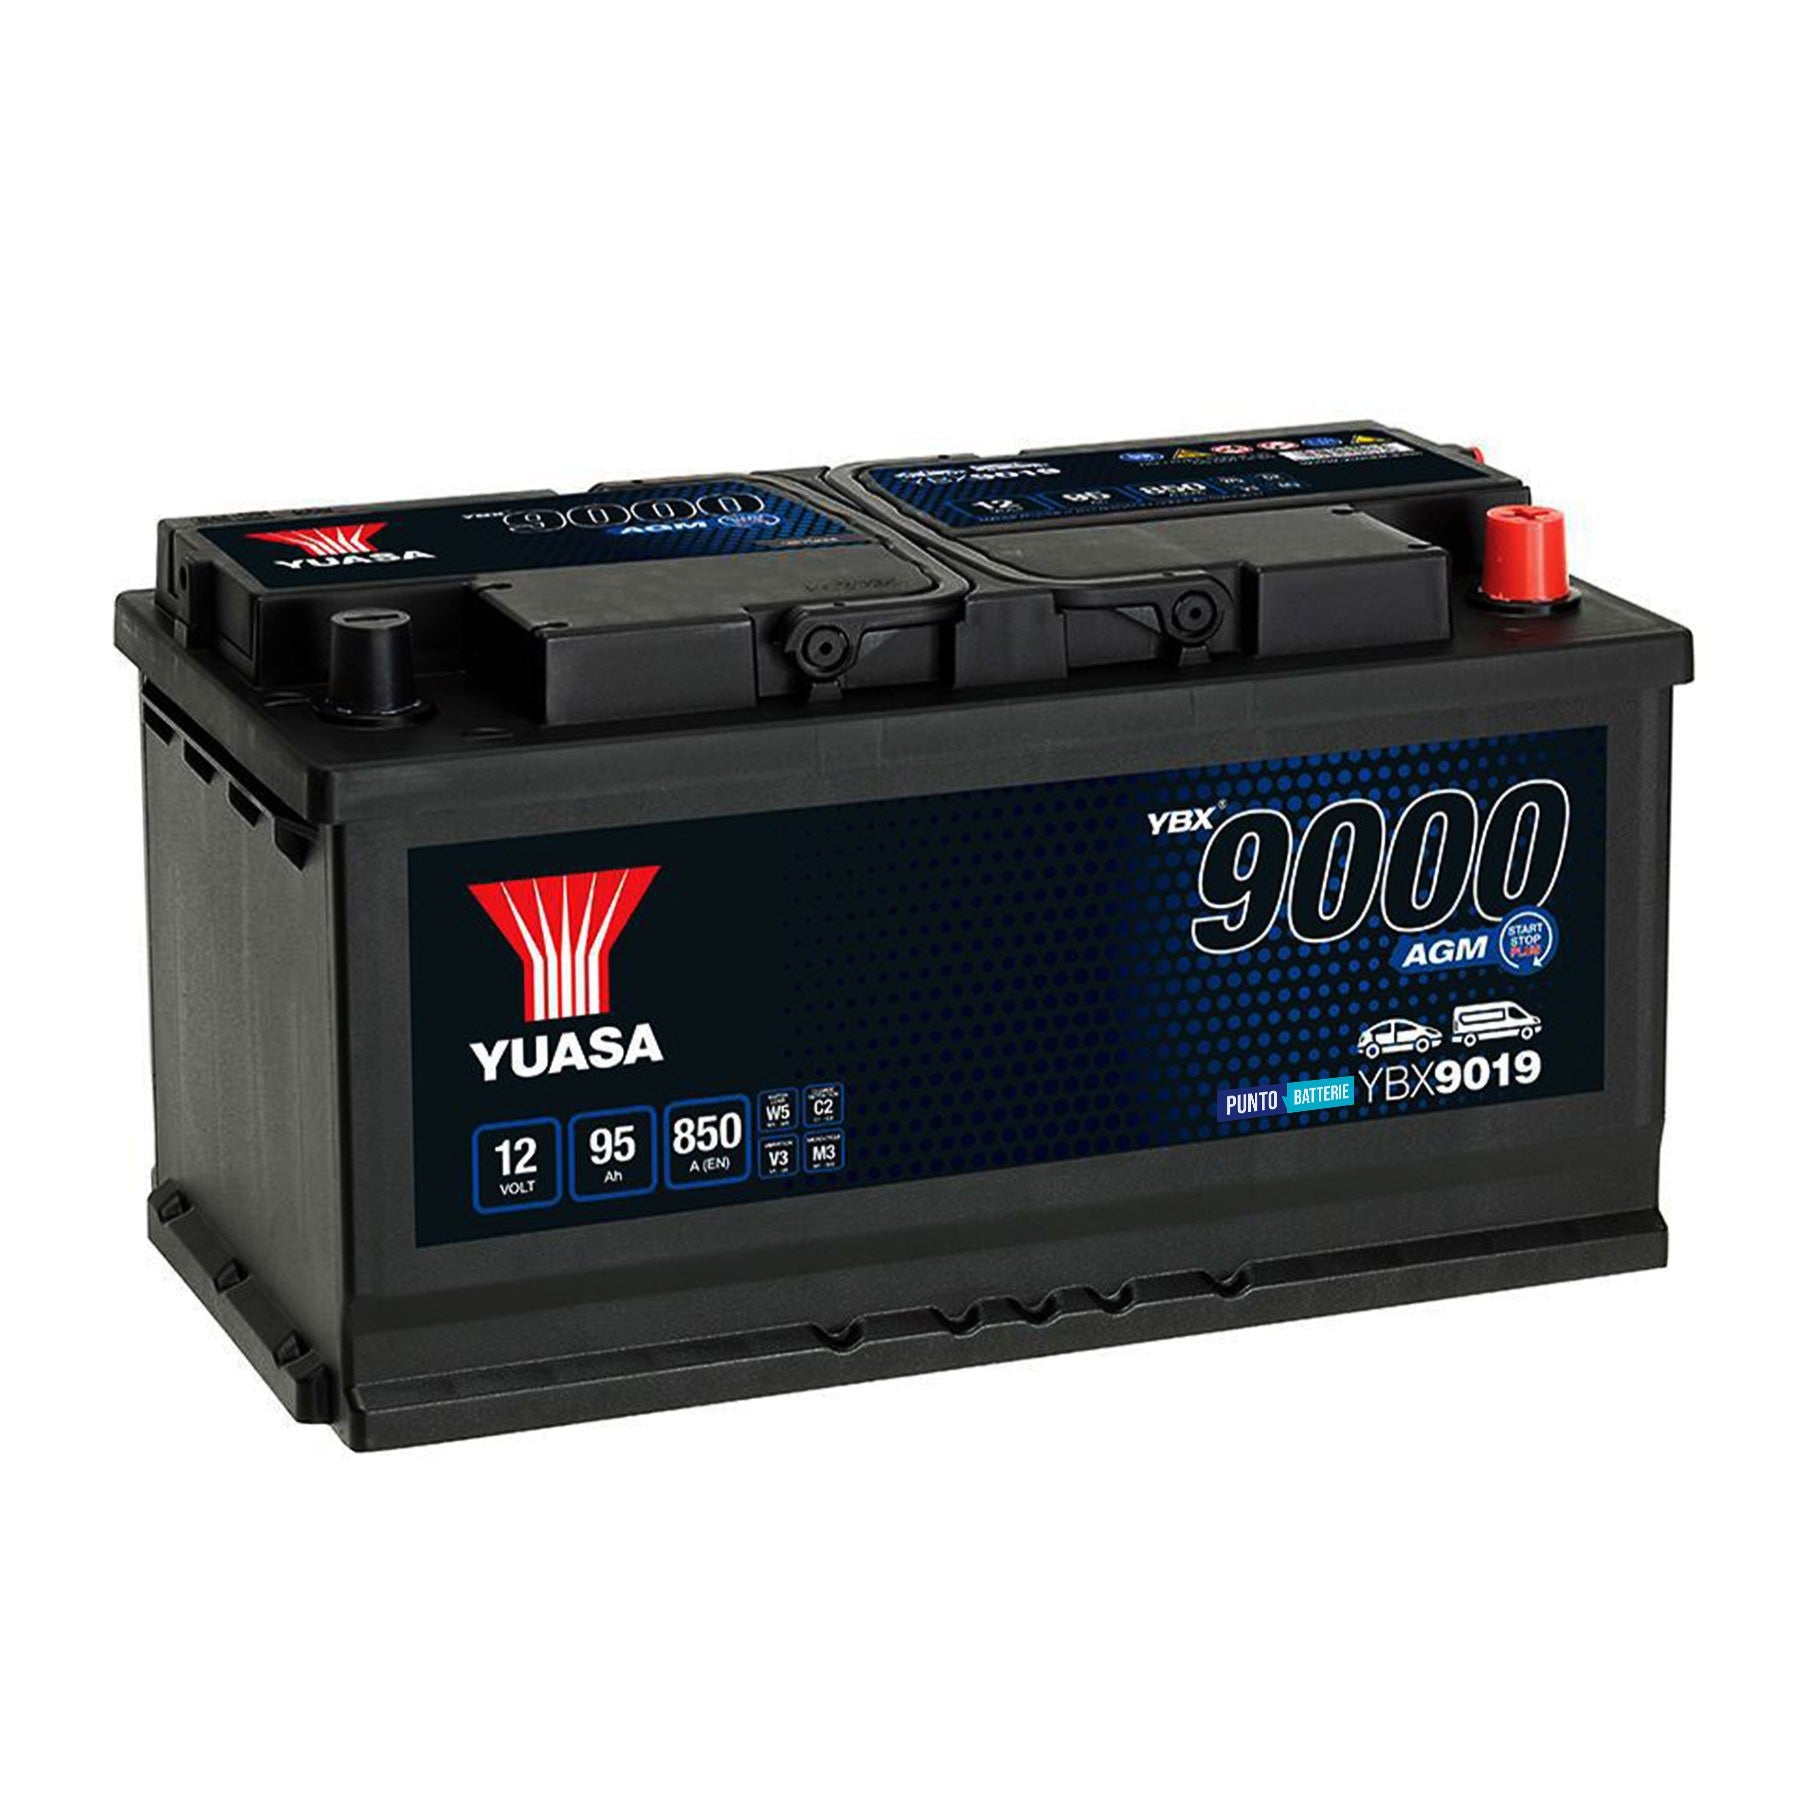 Batteria originale Yuasa YBX9000 YBX9019, dimensioni 353 x 175 x 190, polo positivo a destra, 12 volt, 95 amperora, 850 ampere, AGM. Batteria per auto e veicoli leggeri con start e stop.